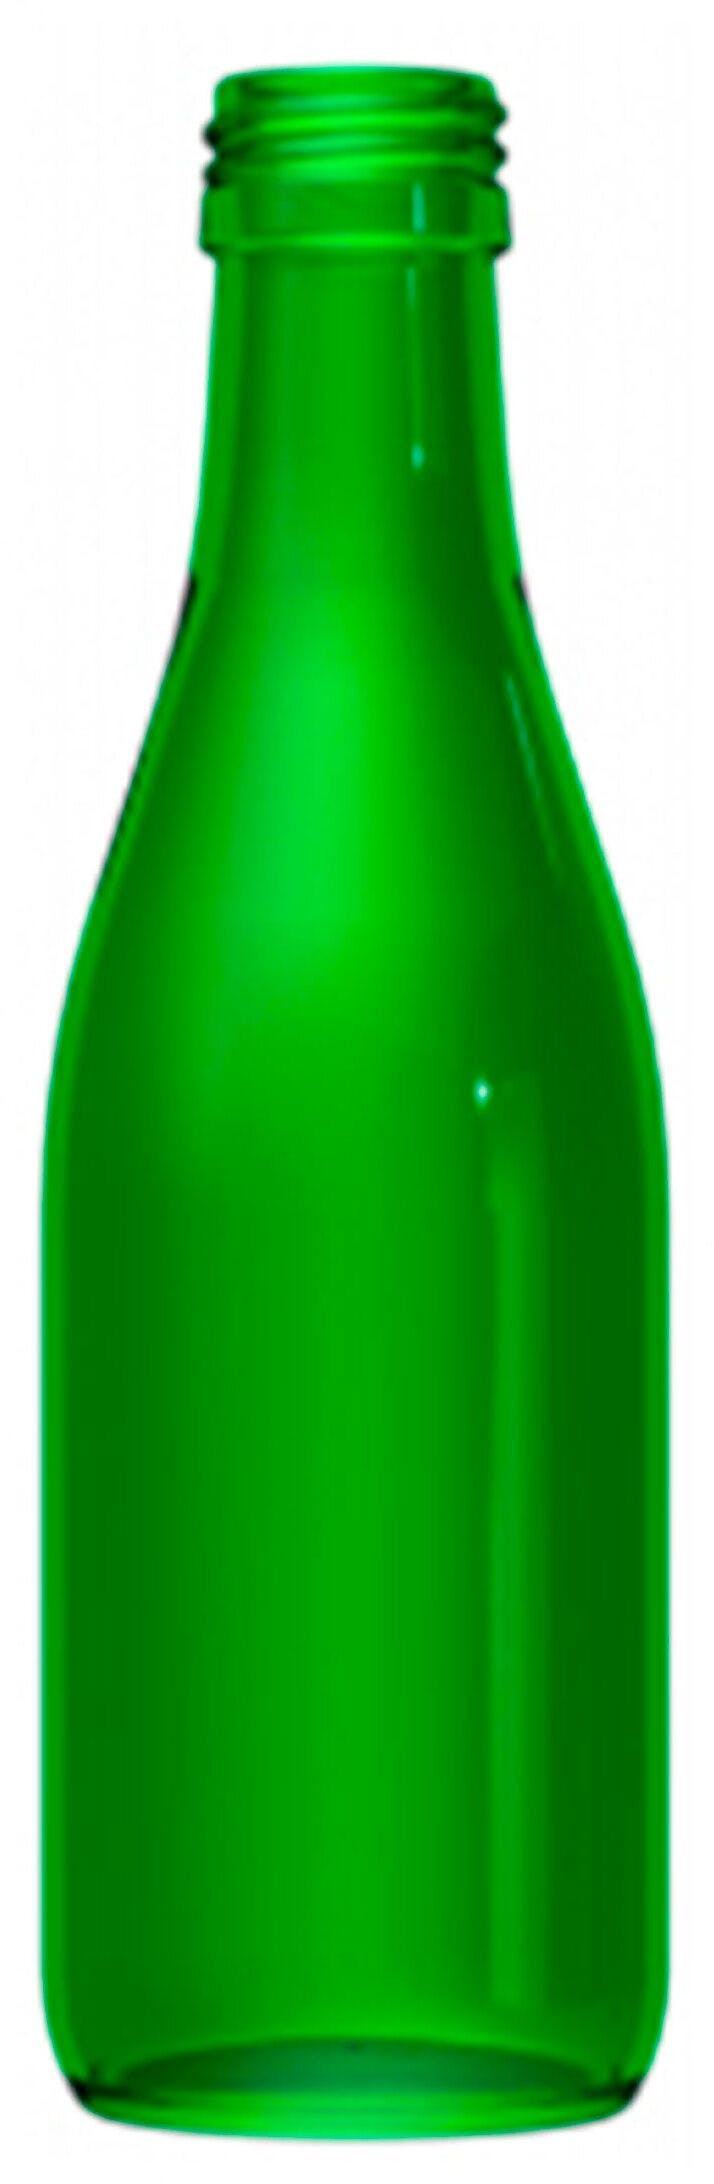 Garrafa Borgonha   TRAD 250 ml BG-Rosca